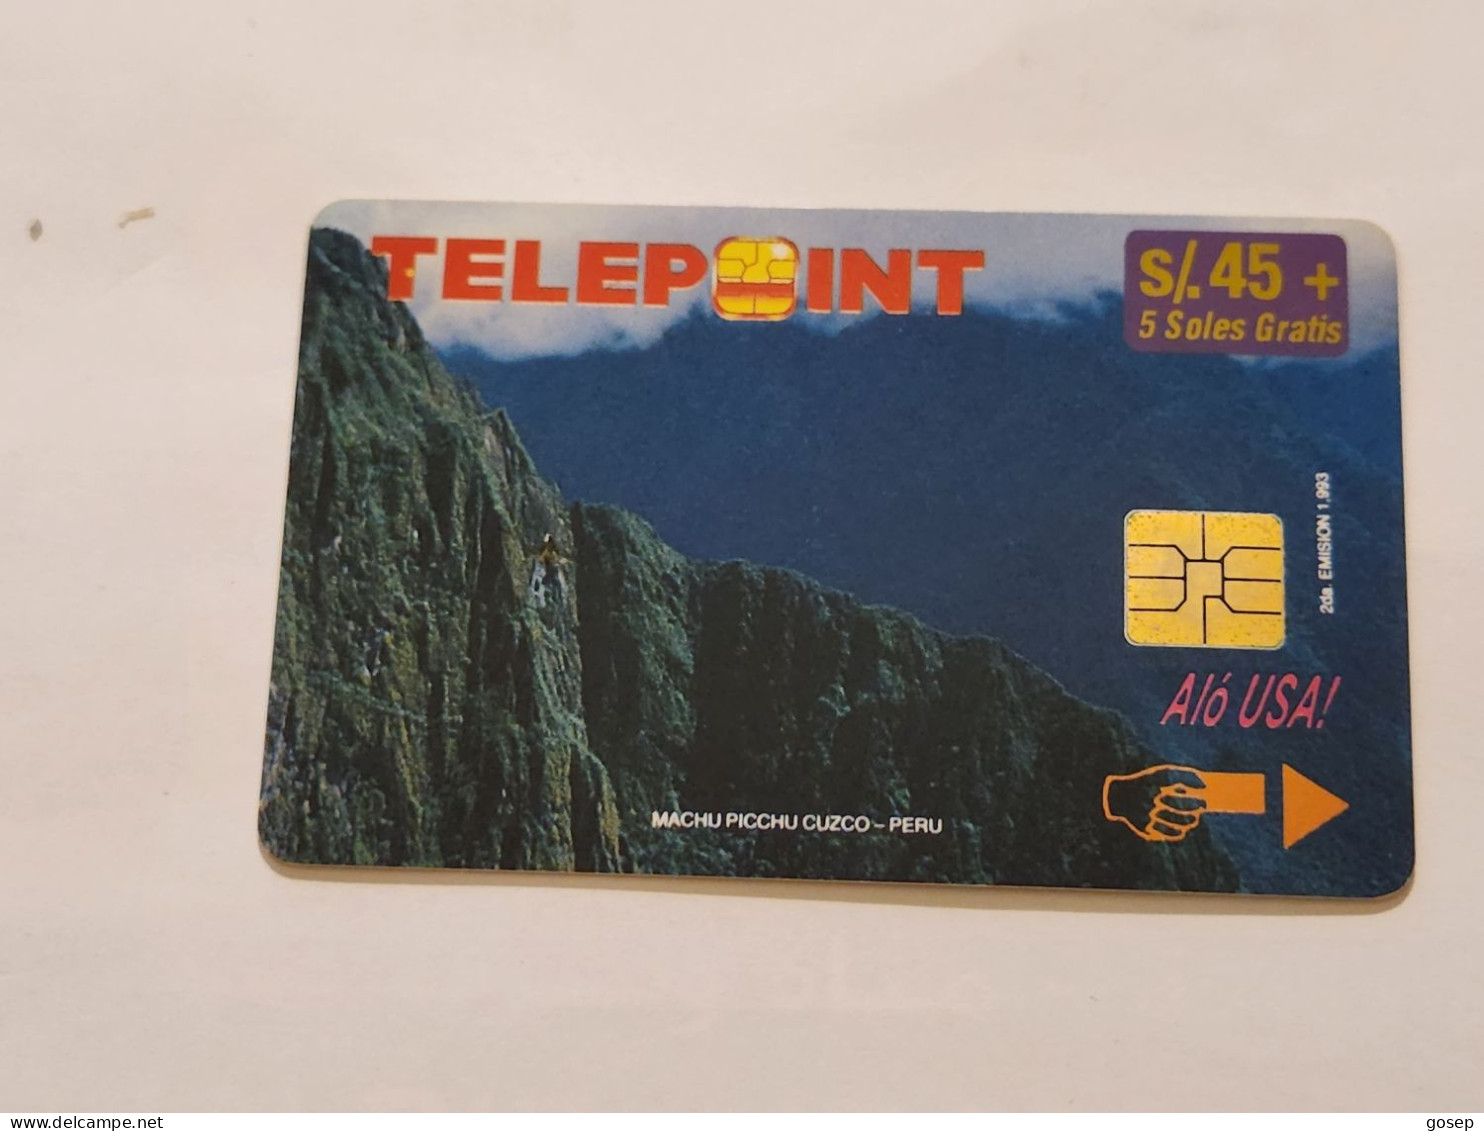 PERU-(PER-TE-33)-Machu Picchu Puzzle-Reverse-2/4(4)(s/45)(PTD001/B2-EX8500)-(tirage-8.500)-used Card+1cars Prepiad,free - Perù